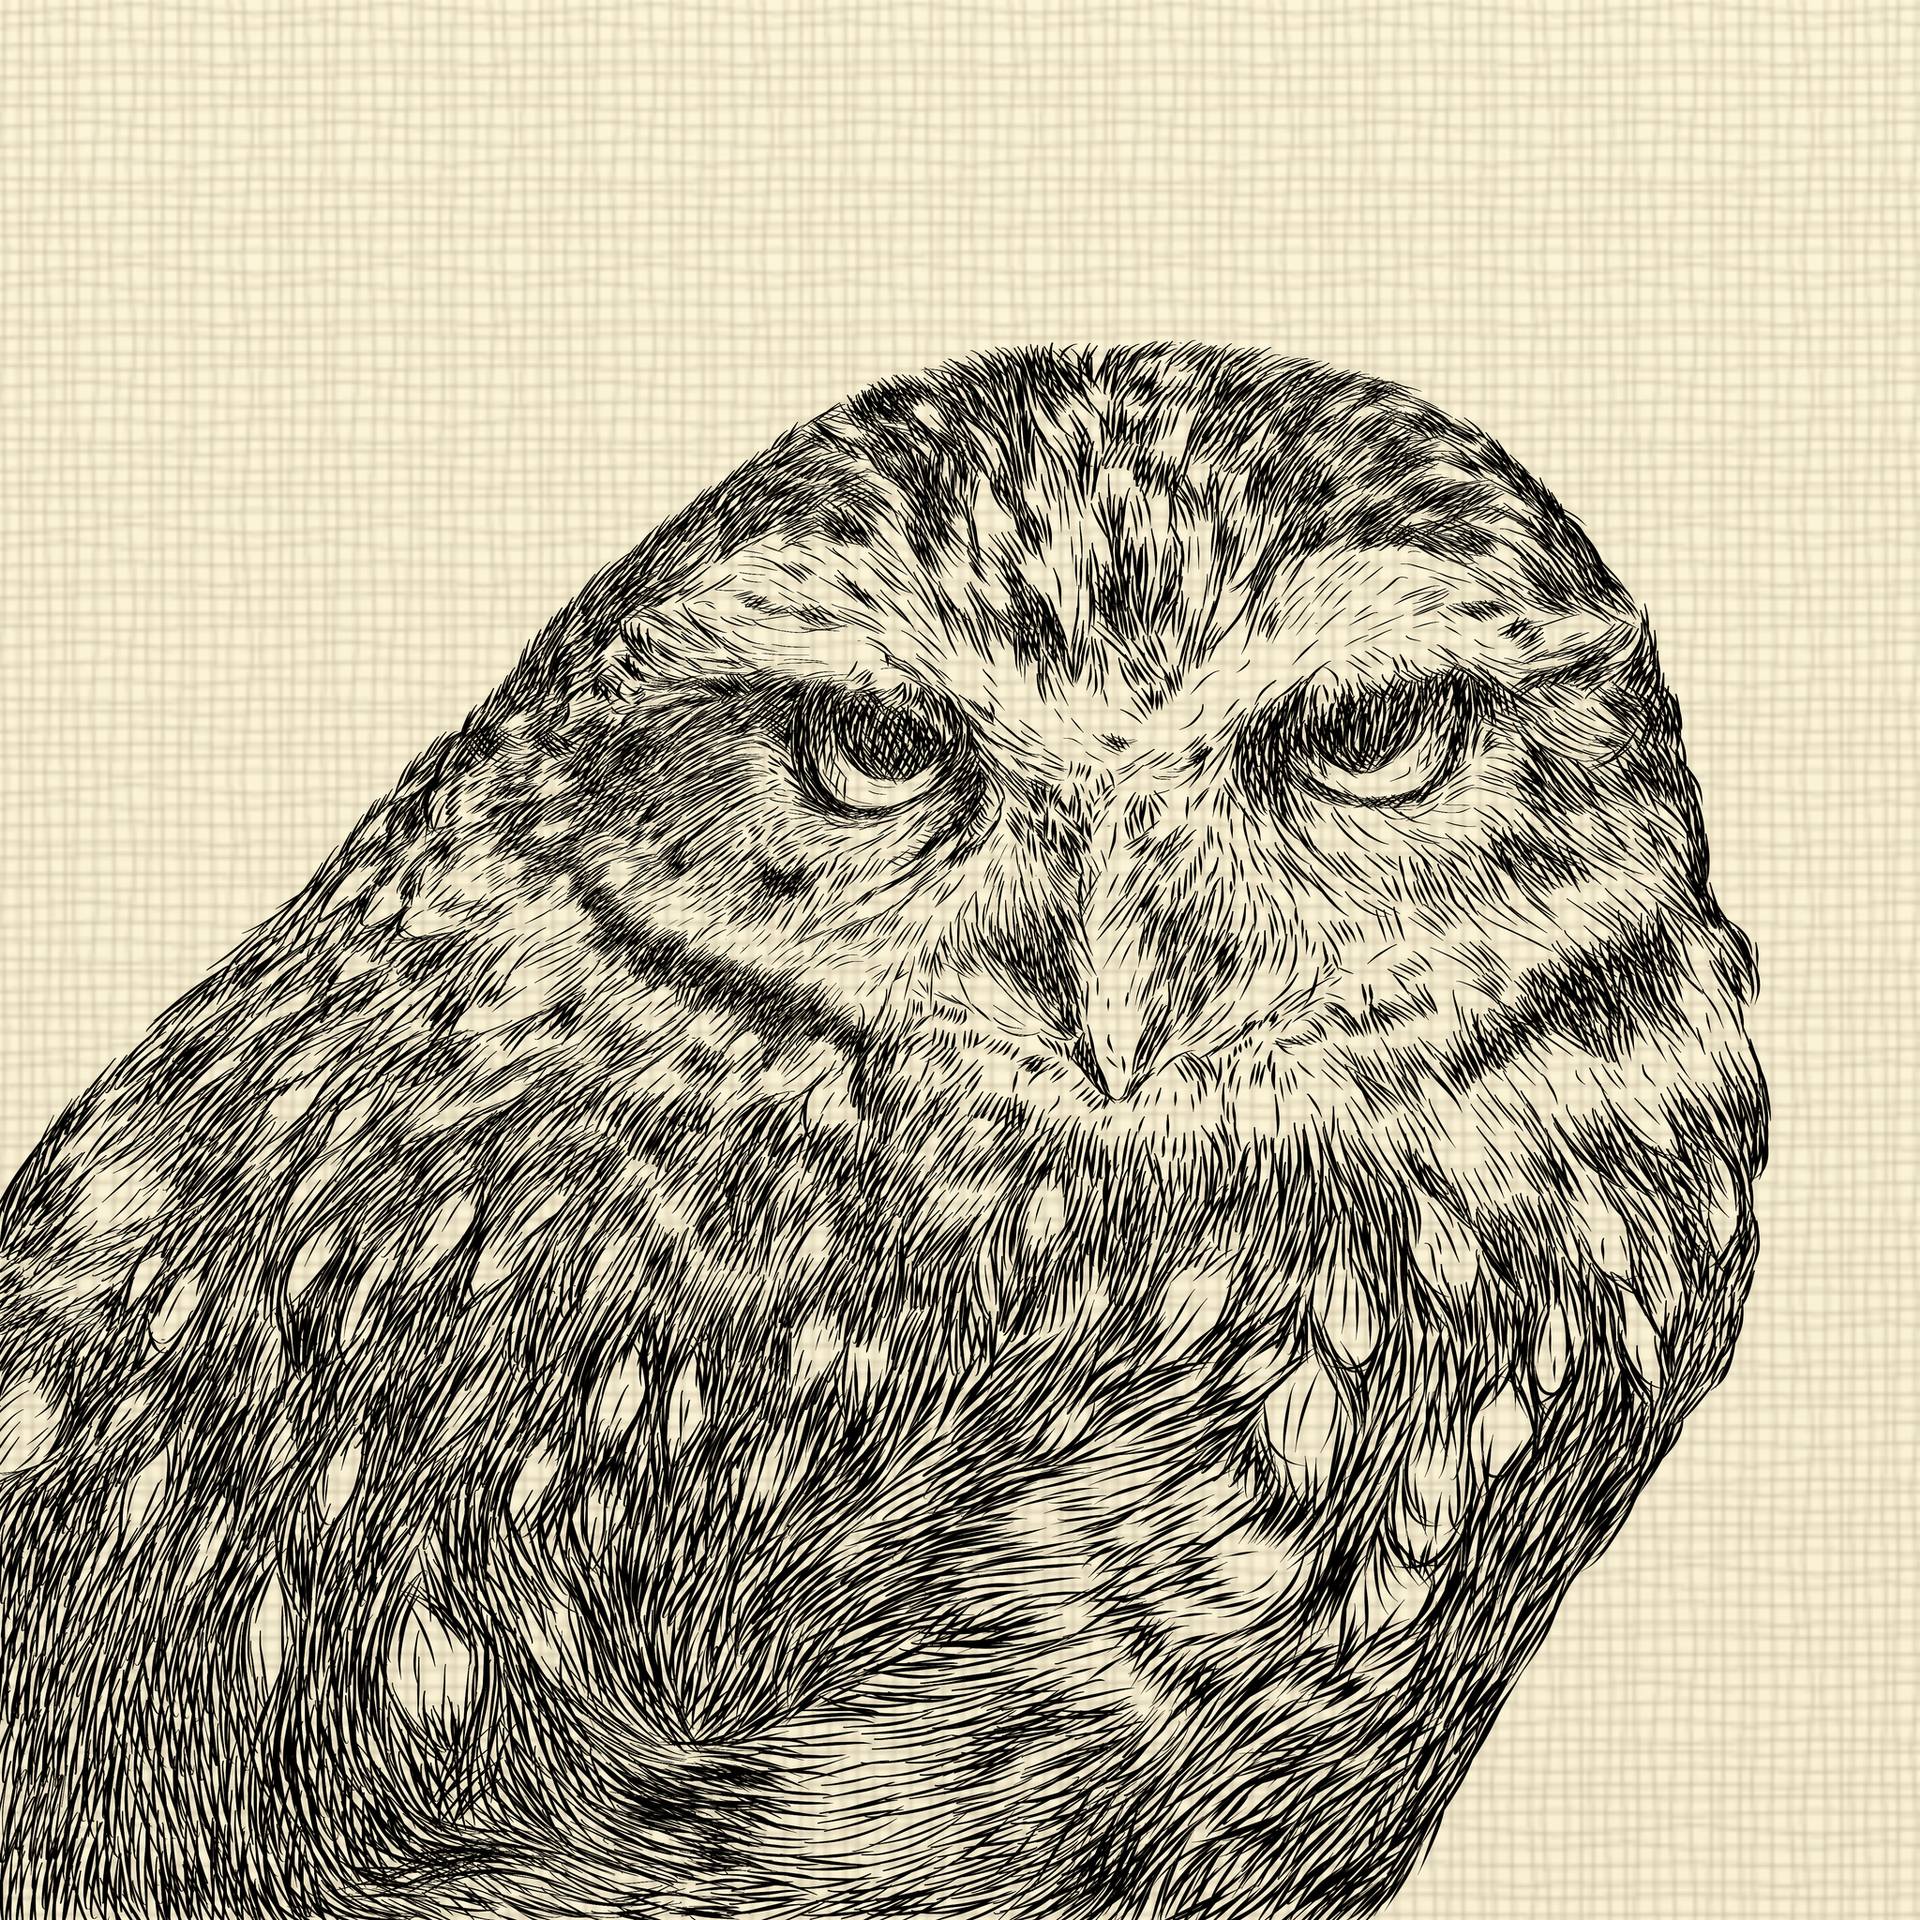 screech owl sketch